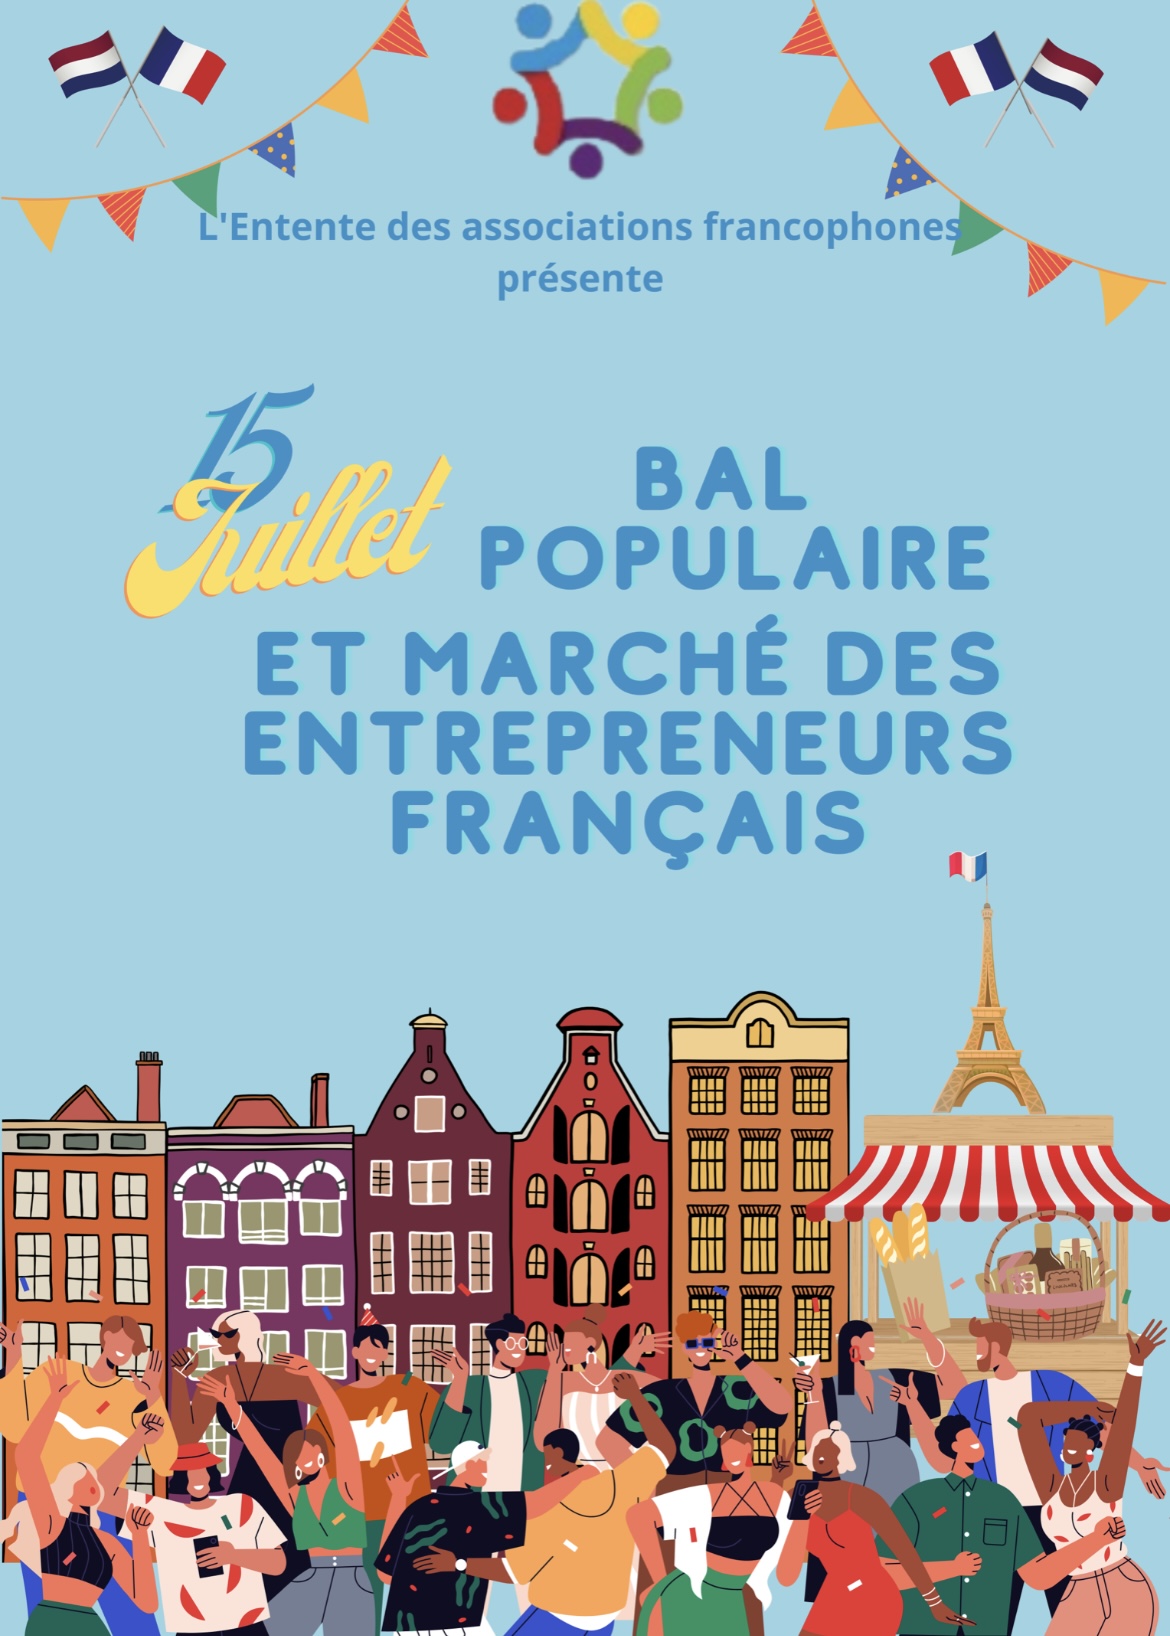 You are currently viewing Bal populaire de l’entente francophone : rendez-vous le 15 juillet !